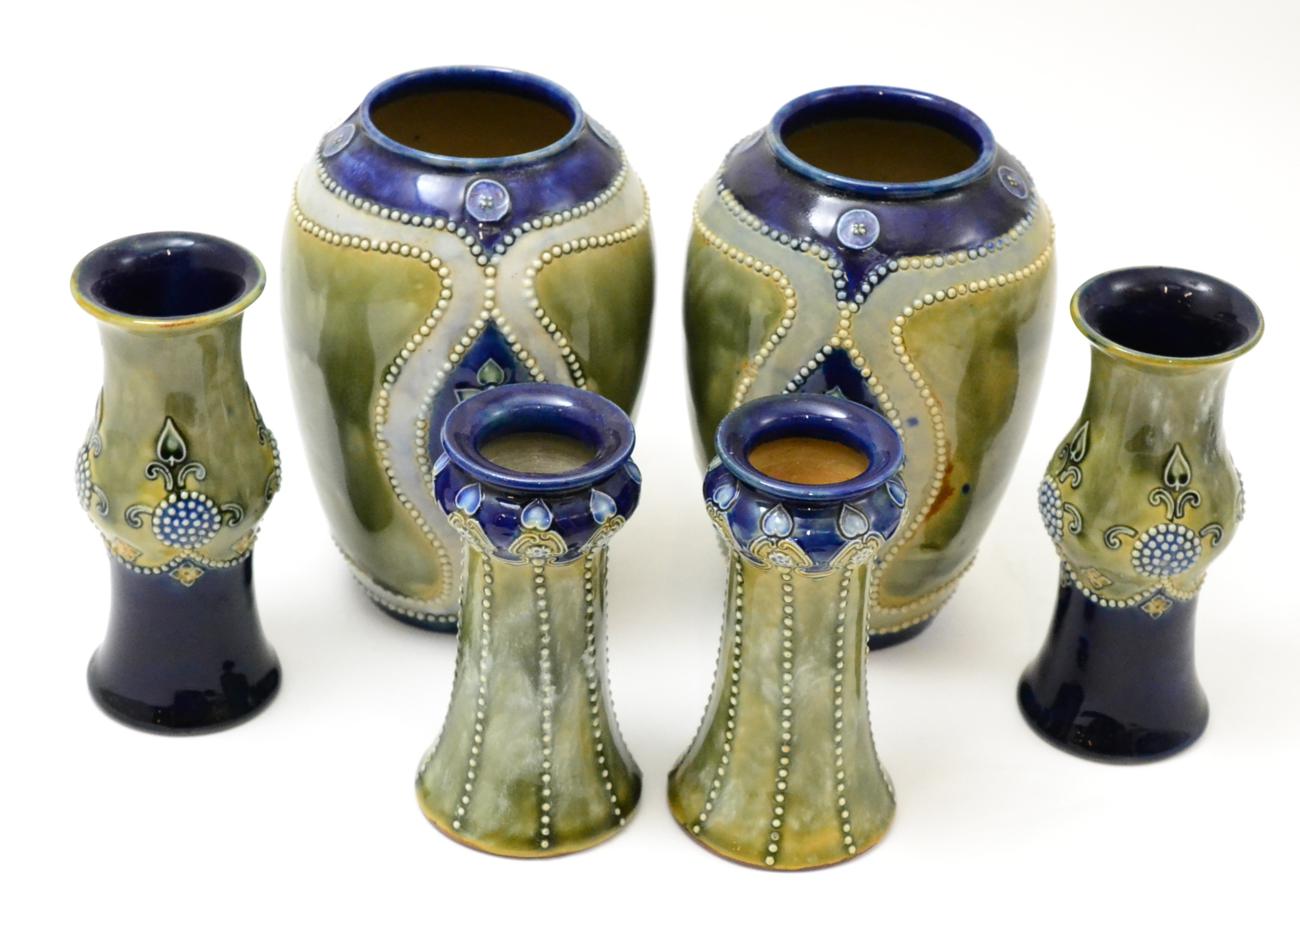 Three pairs of similar Royal Doulton vases